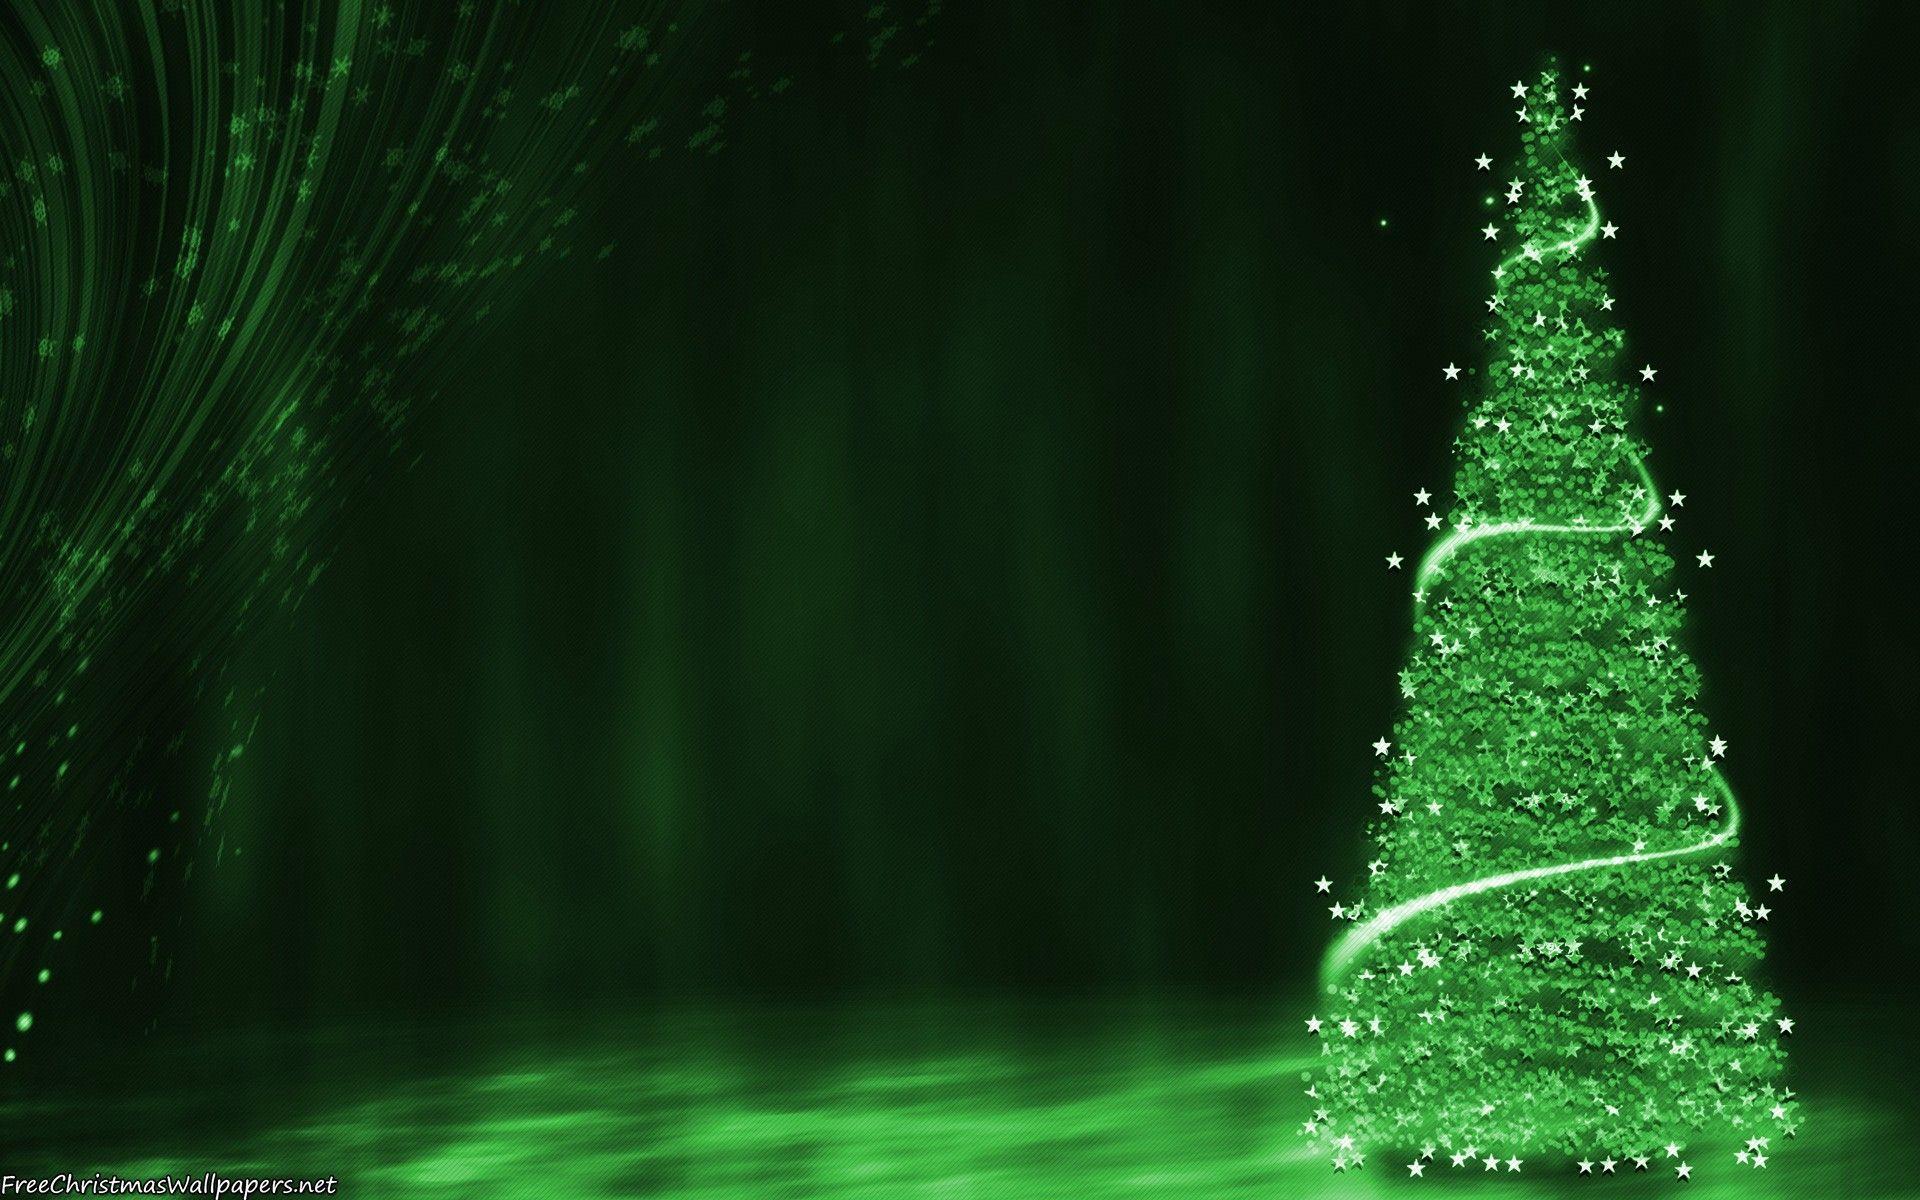 Hình nền Giáng Sinh màu xanh lá cây: Mang tới cho bạn cảm giác thanh tịnh, thiên nhiên và ấm áp tình yêu thương trong những ngày lễ đặc biệt. Với hình nền Giáng Sinh màu xanh lá cây, bạn sẽ cảm thấy tâm hồn minh mẫn, tâm trí thư thái và niềm vui tràn đầy.